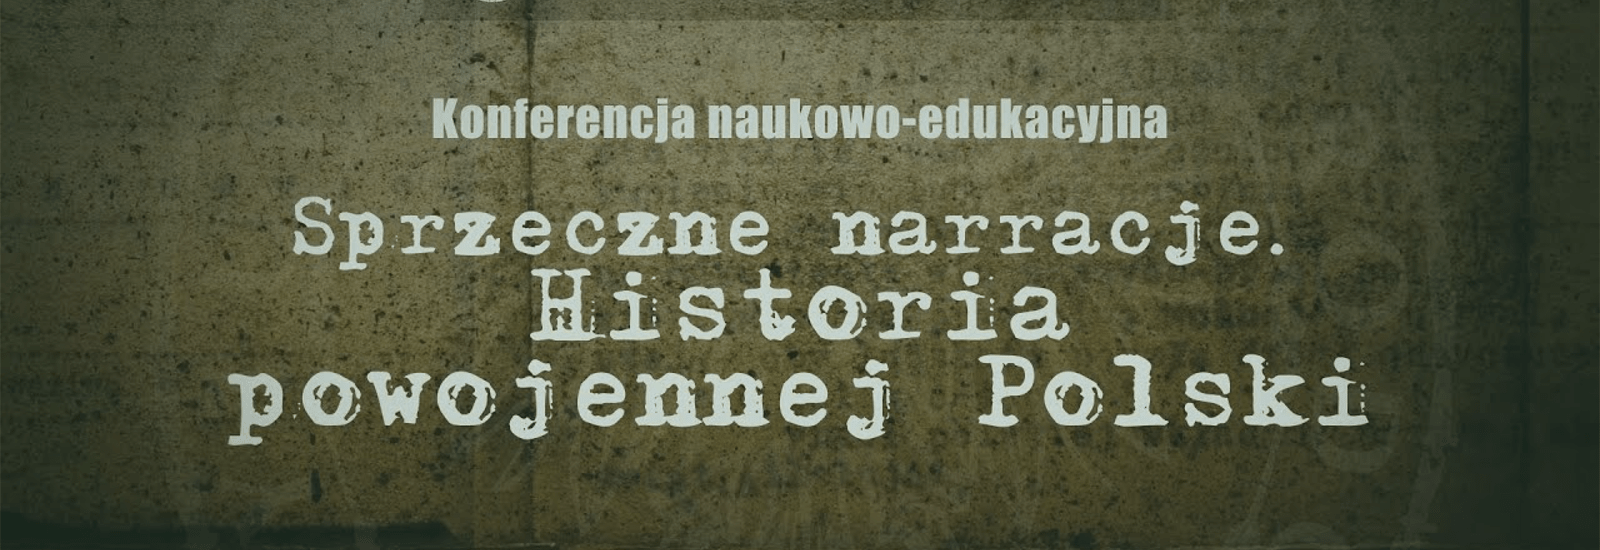 Zaborski, Morysiński na konferencji “Sprzeczne narracje. Historia powojennej Polski"